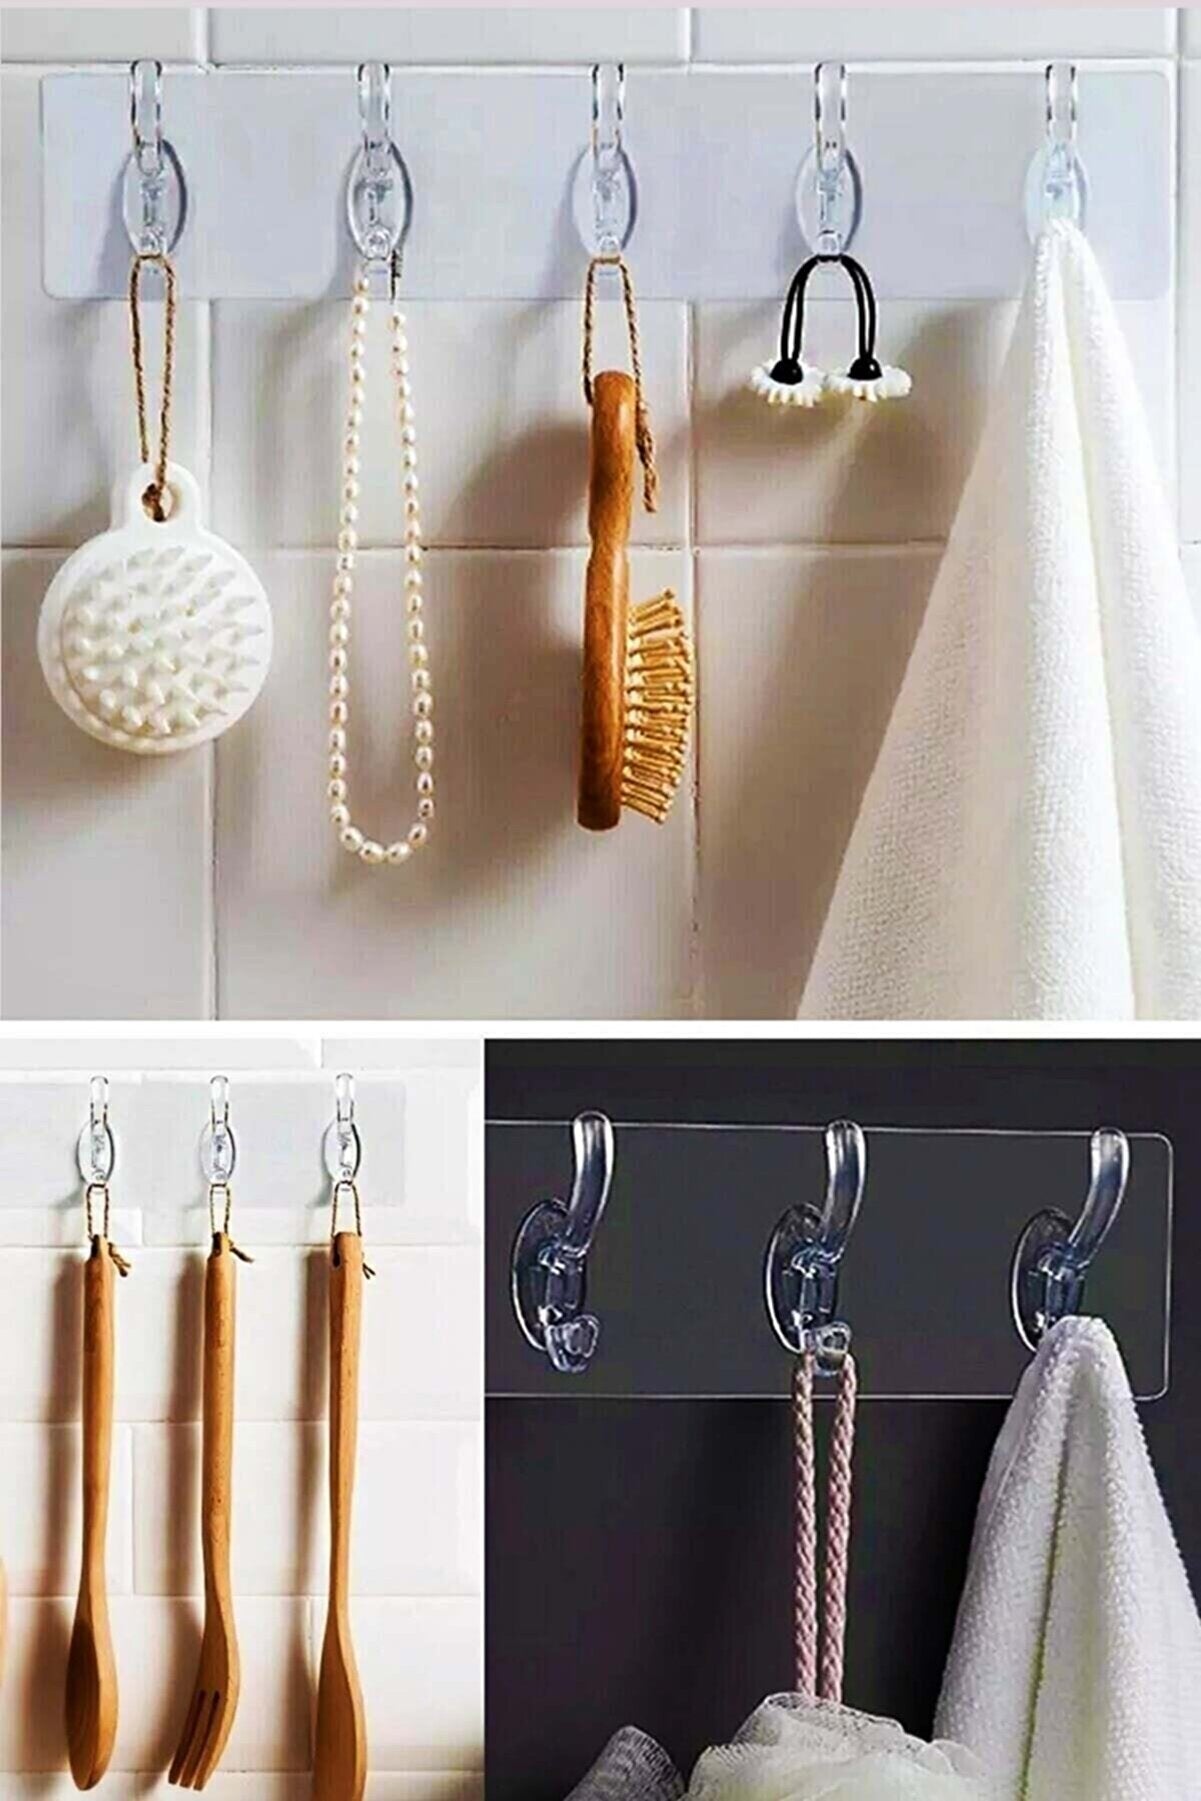 Şifa-iNur Waterproof Silicone 5 Piece Adhesive Transparent Wall Hanger Bathroom Kitchen Organizer Hanger